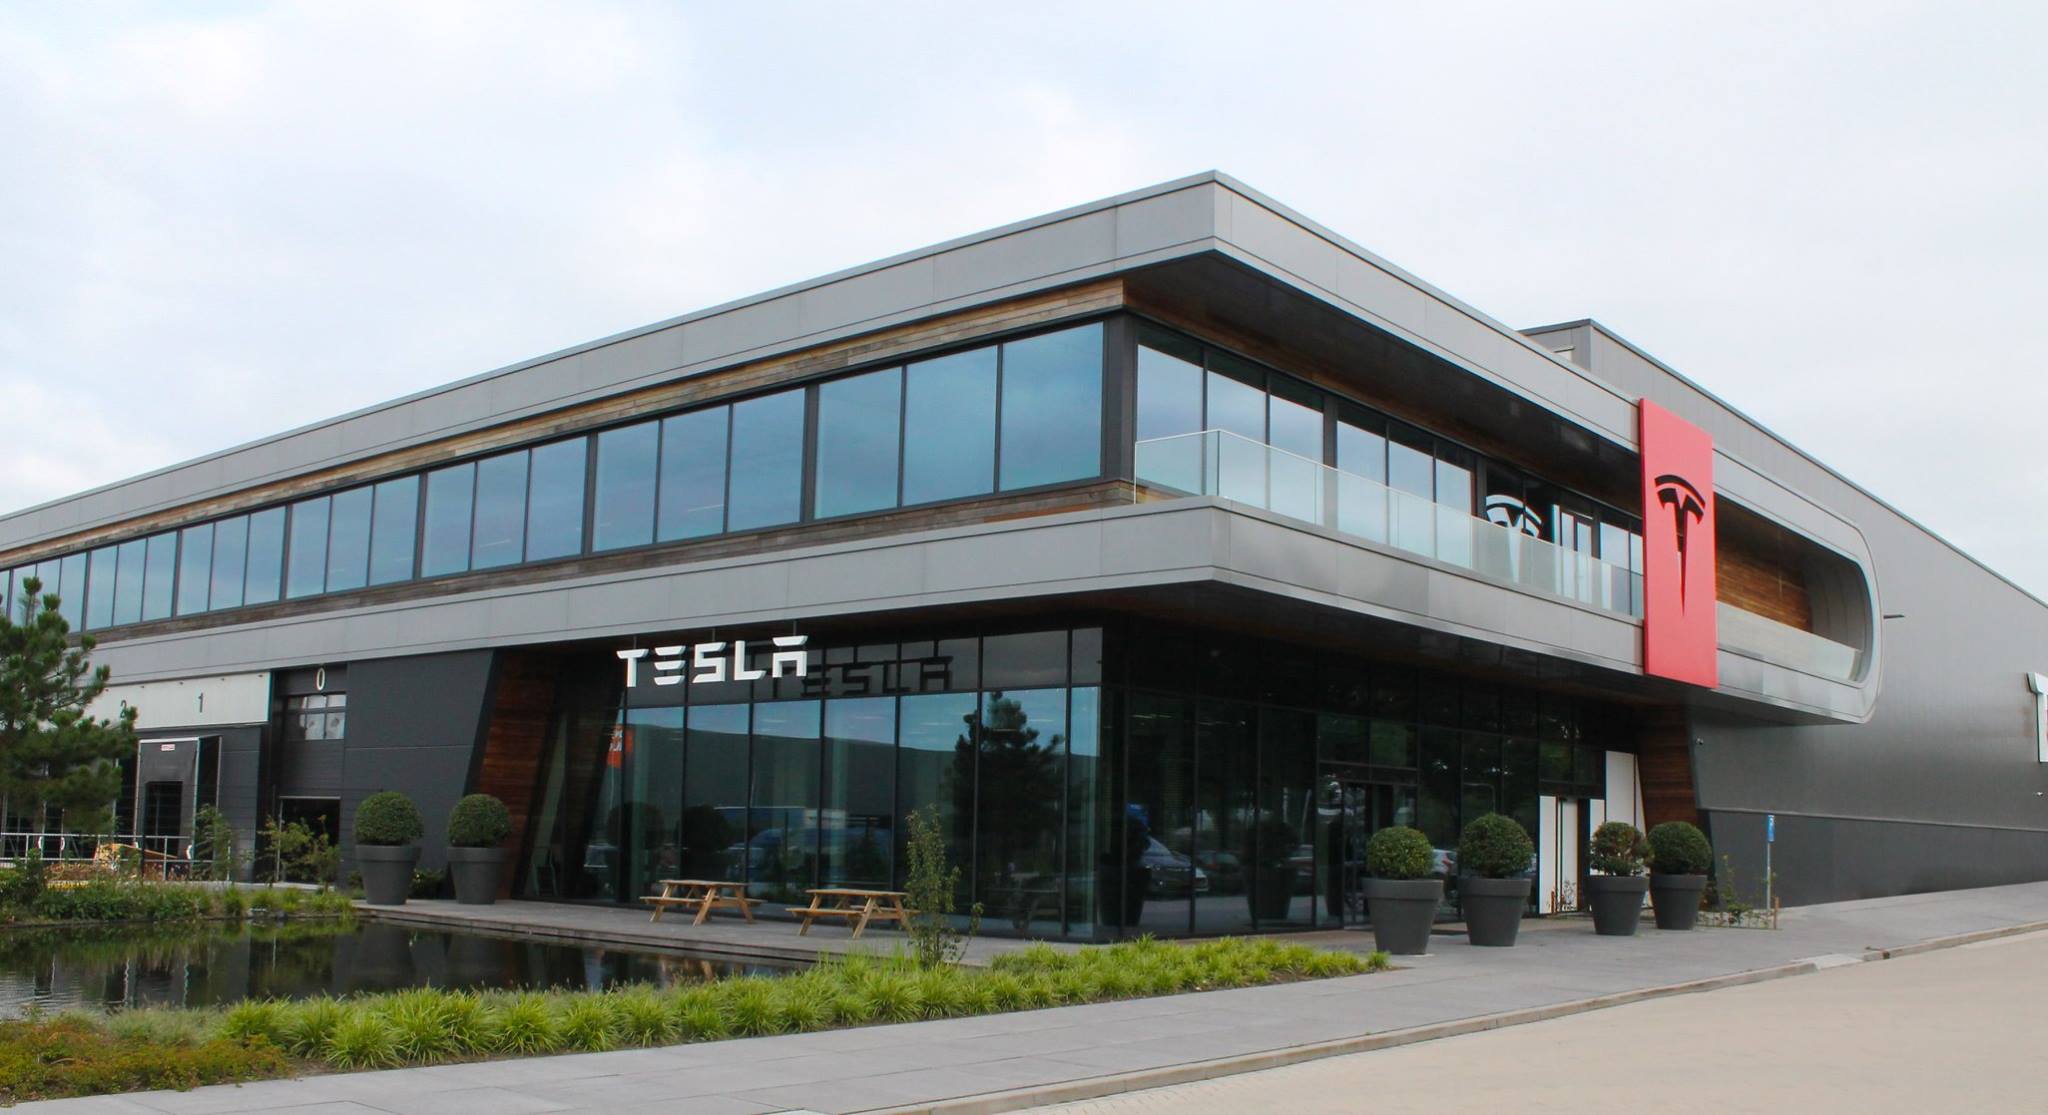 Tesla factory in Tilburg, Denmark